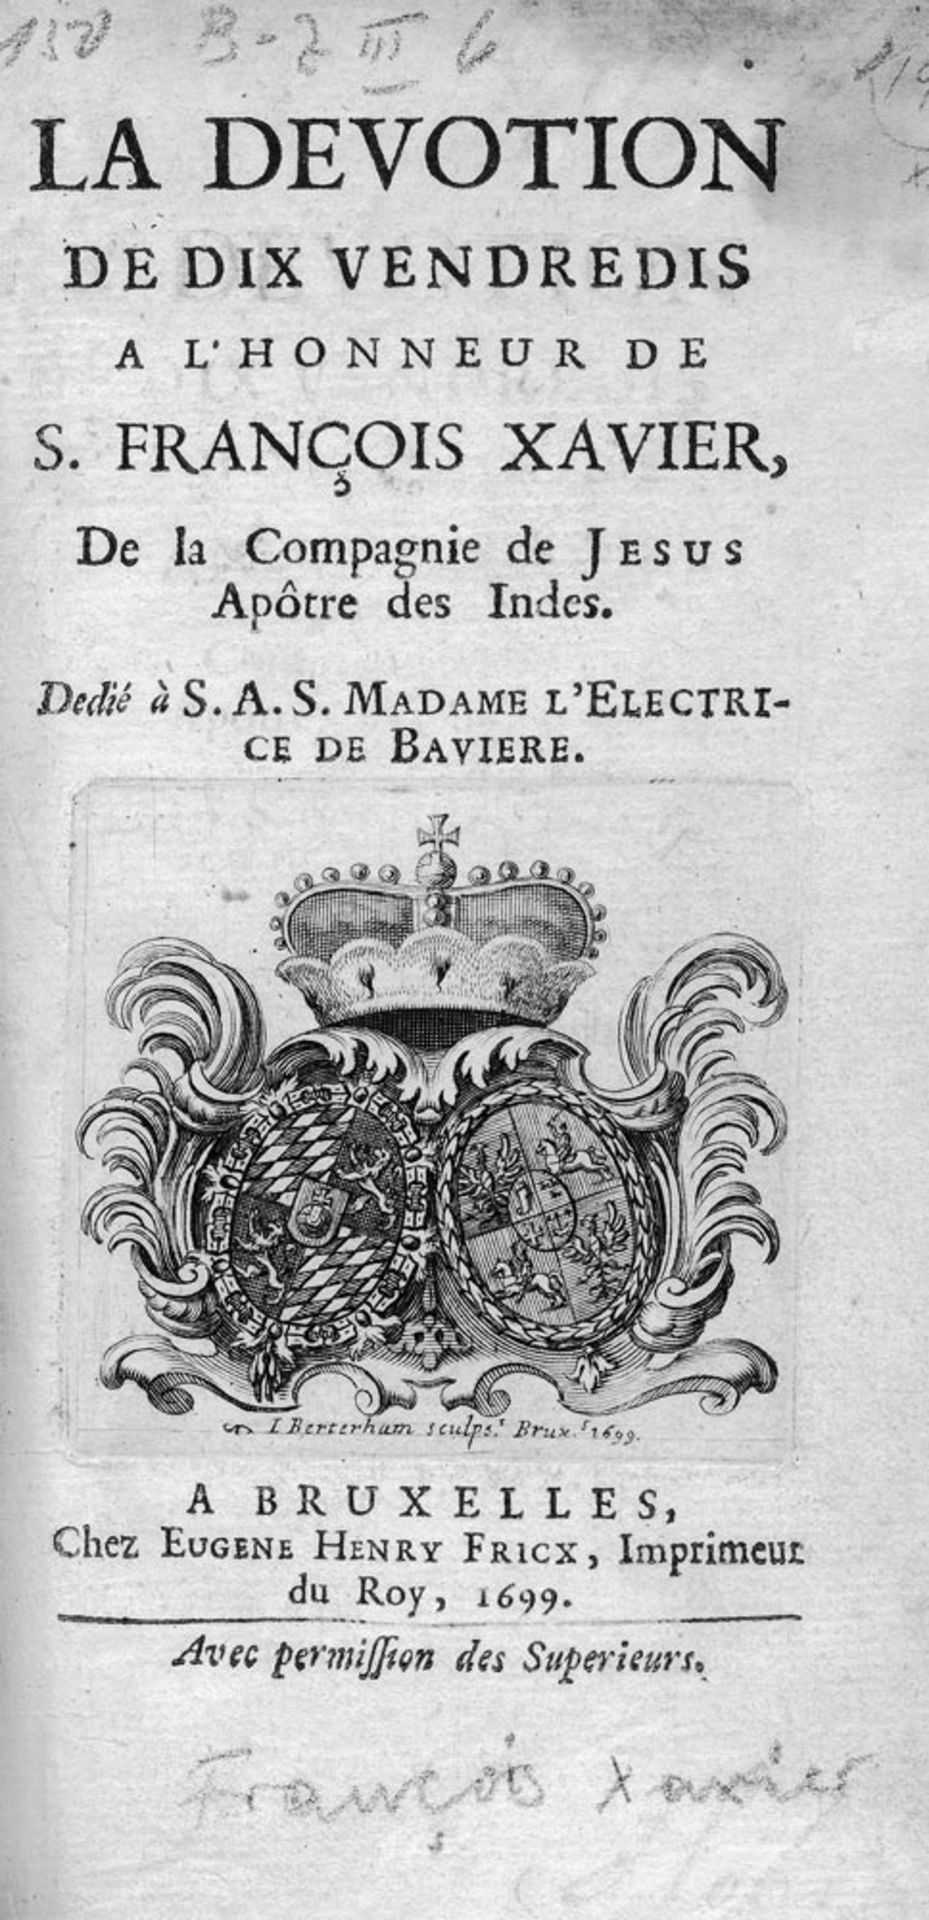 Smackers, Théodore: La dévotion de dix vendredis à l'honneur de S. François Xavier